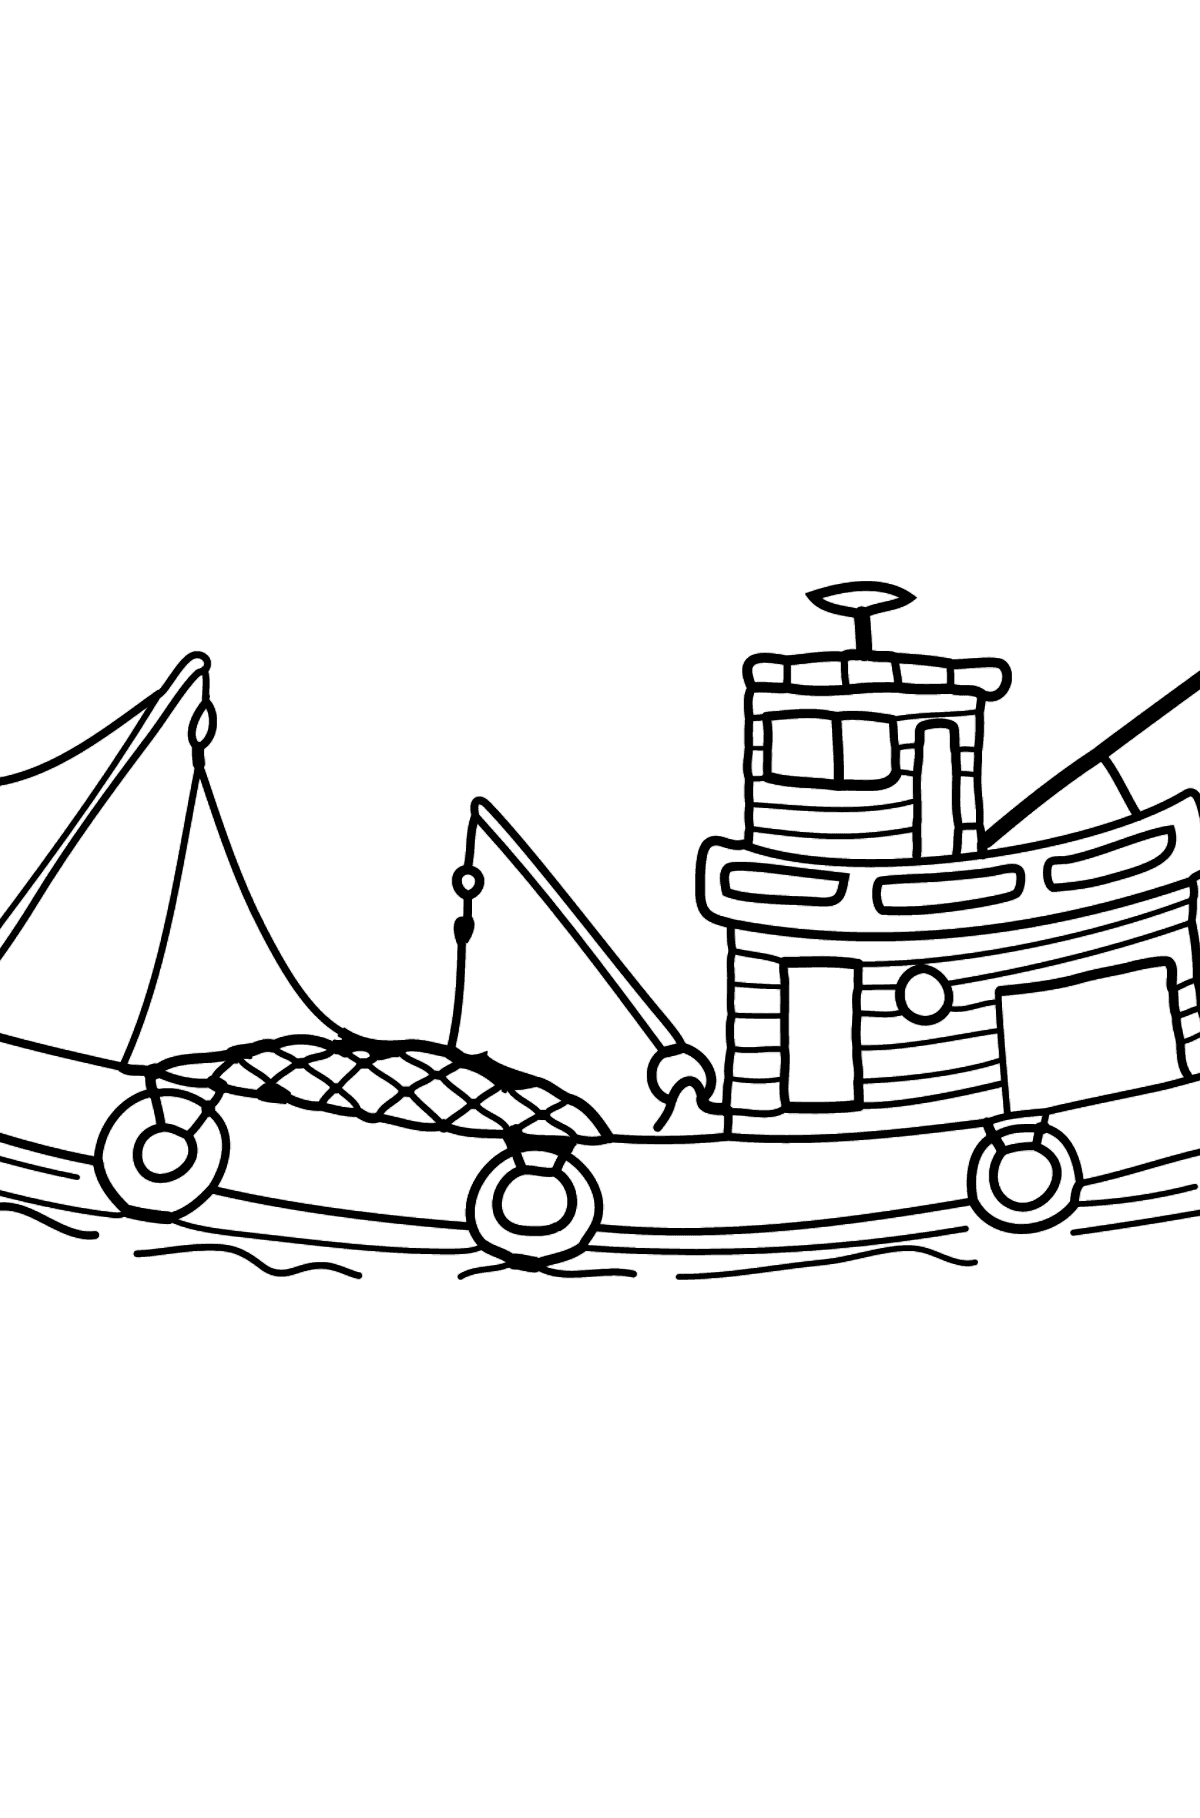 Tegning til fargelegging fiskebåt - Tegninger til fargelegging for barn